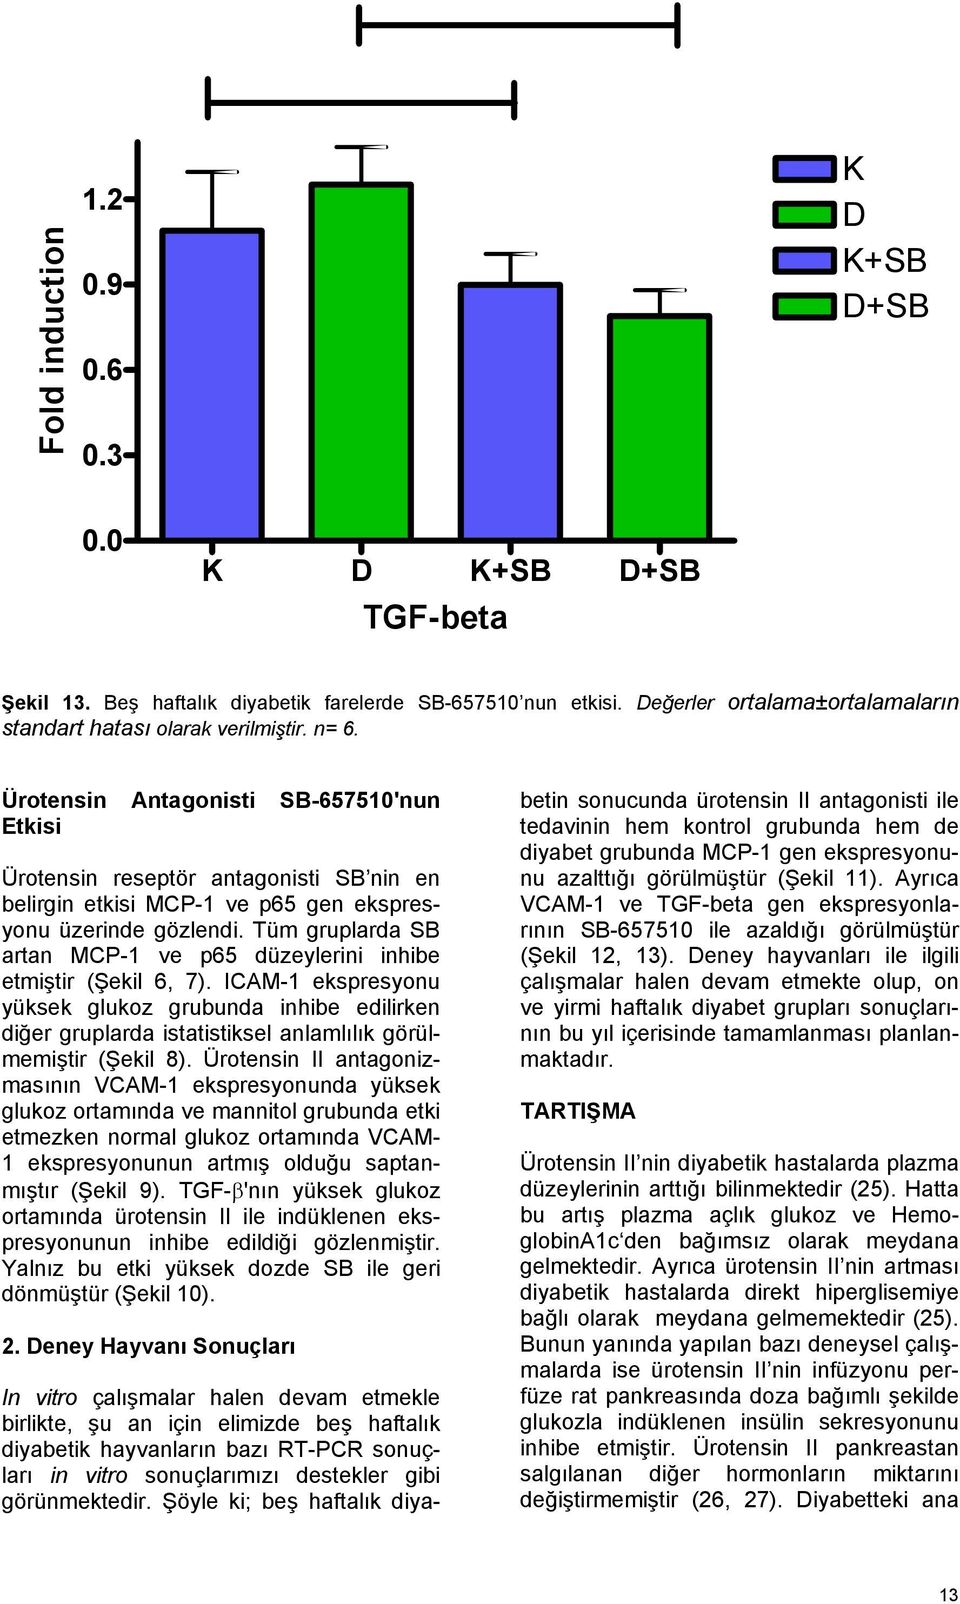 Ürotensin Antagonisti SB-657510'nun Etkisi Ürotensin reseptör antagonisti SB nin en belirgin etkisi MCP-1 ve p65 gen ekspresyonu üzerinde gözlendi.